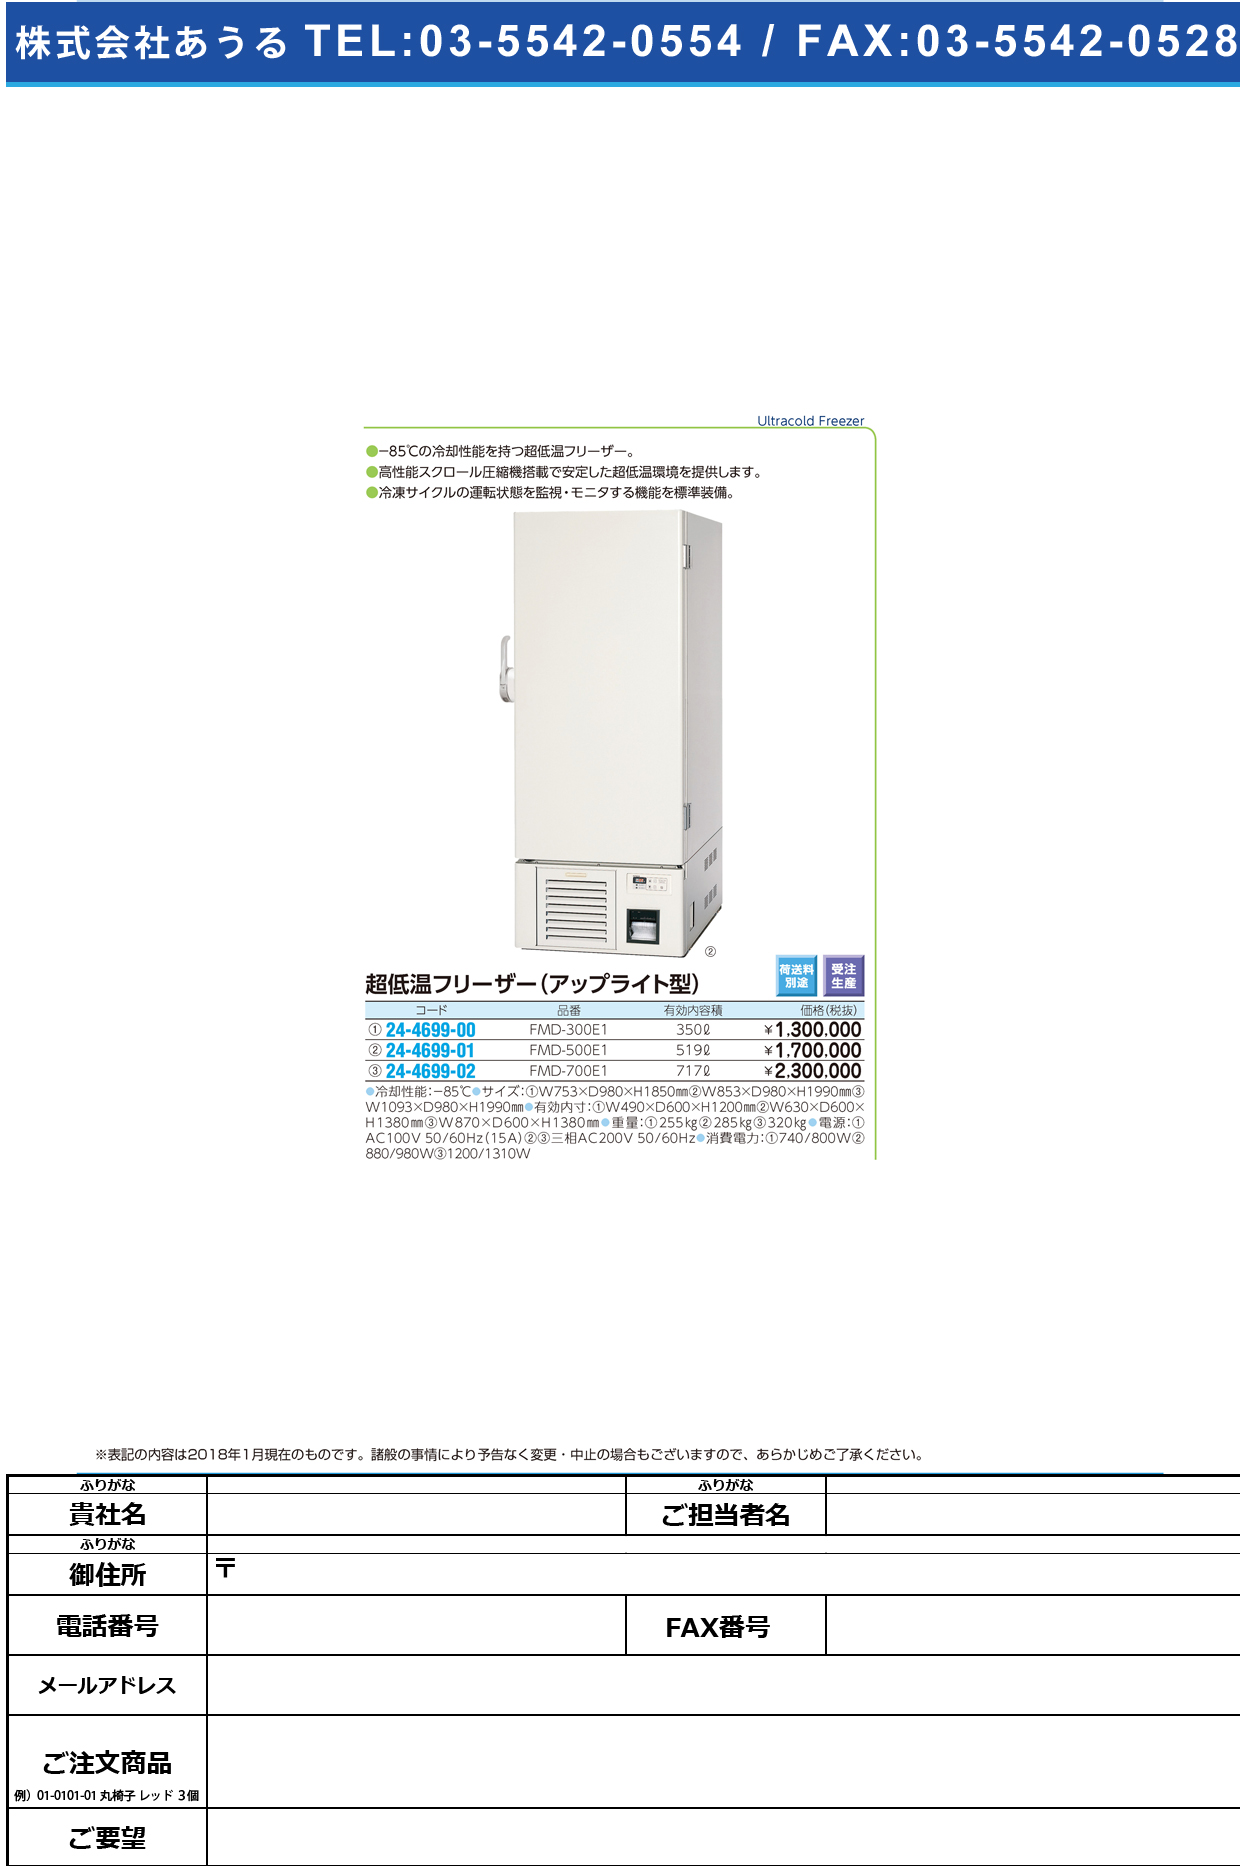 (24-4699-00)超低温フリーザー（アップライト型） FMD-300E1 ﾁｮｳﾃｲｵﾝﾌﾘｰｻﾞｰ(福島工業)【1台単位】【2018年カタログ商品】